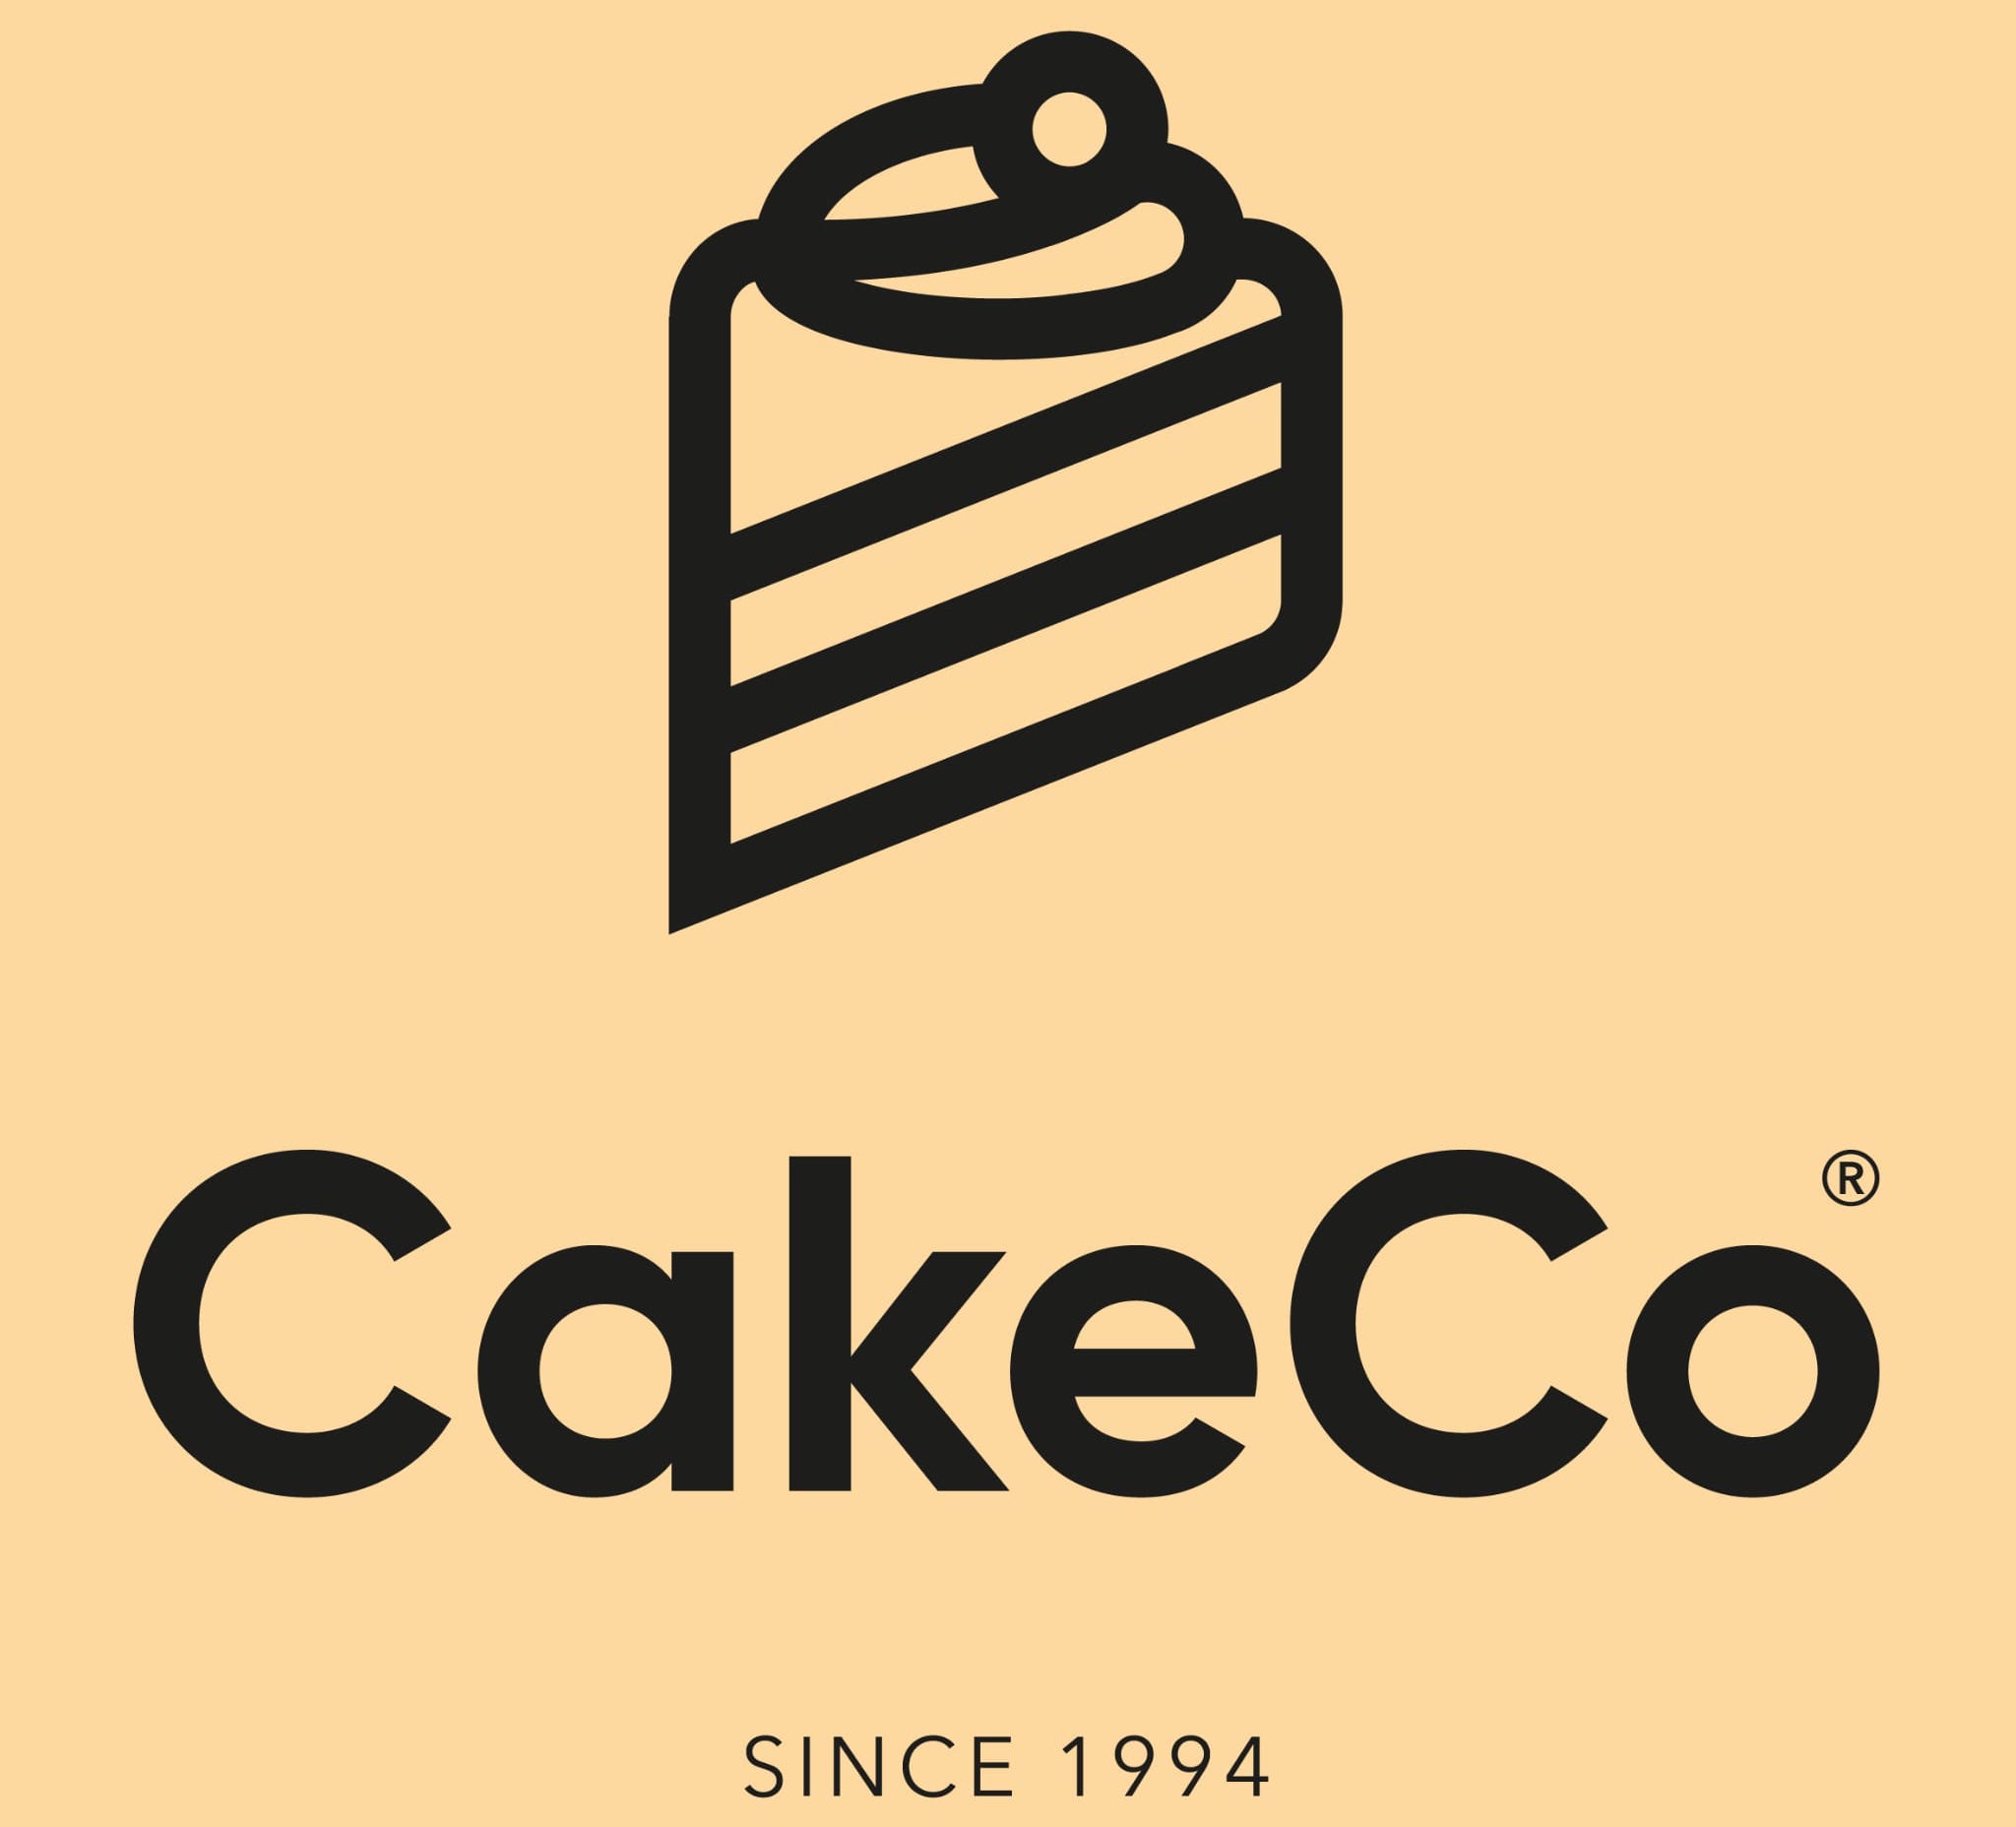 Cakeco